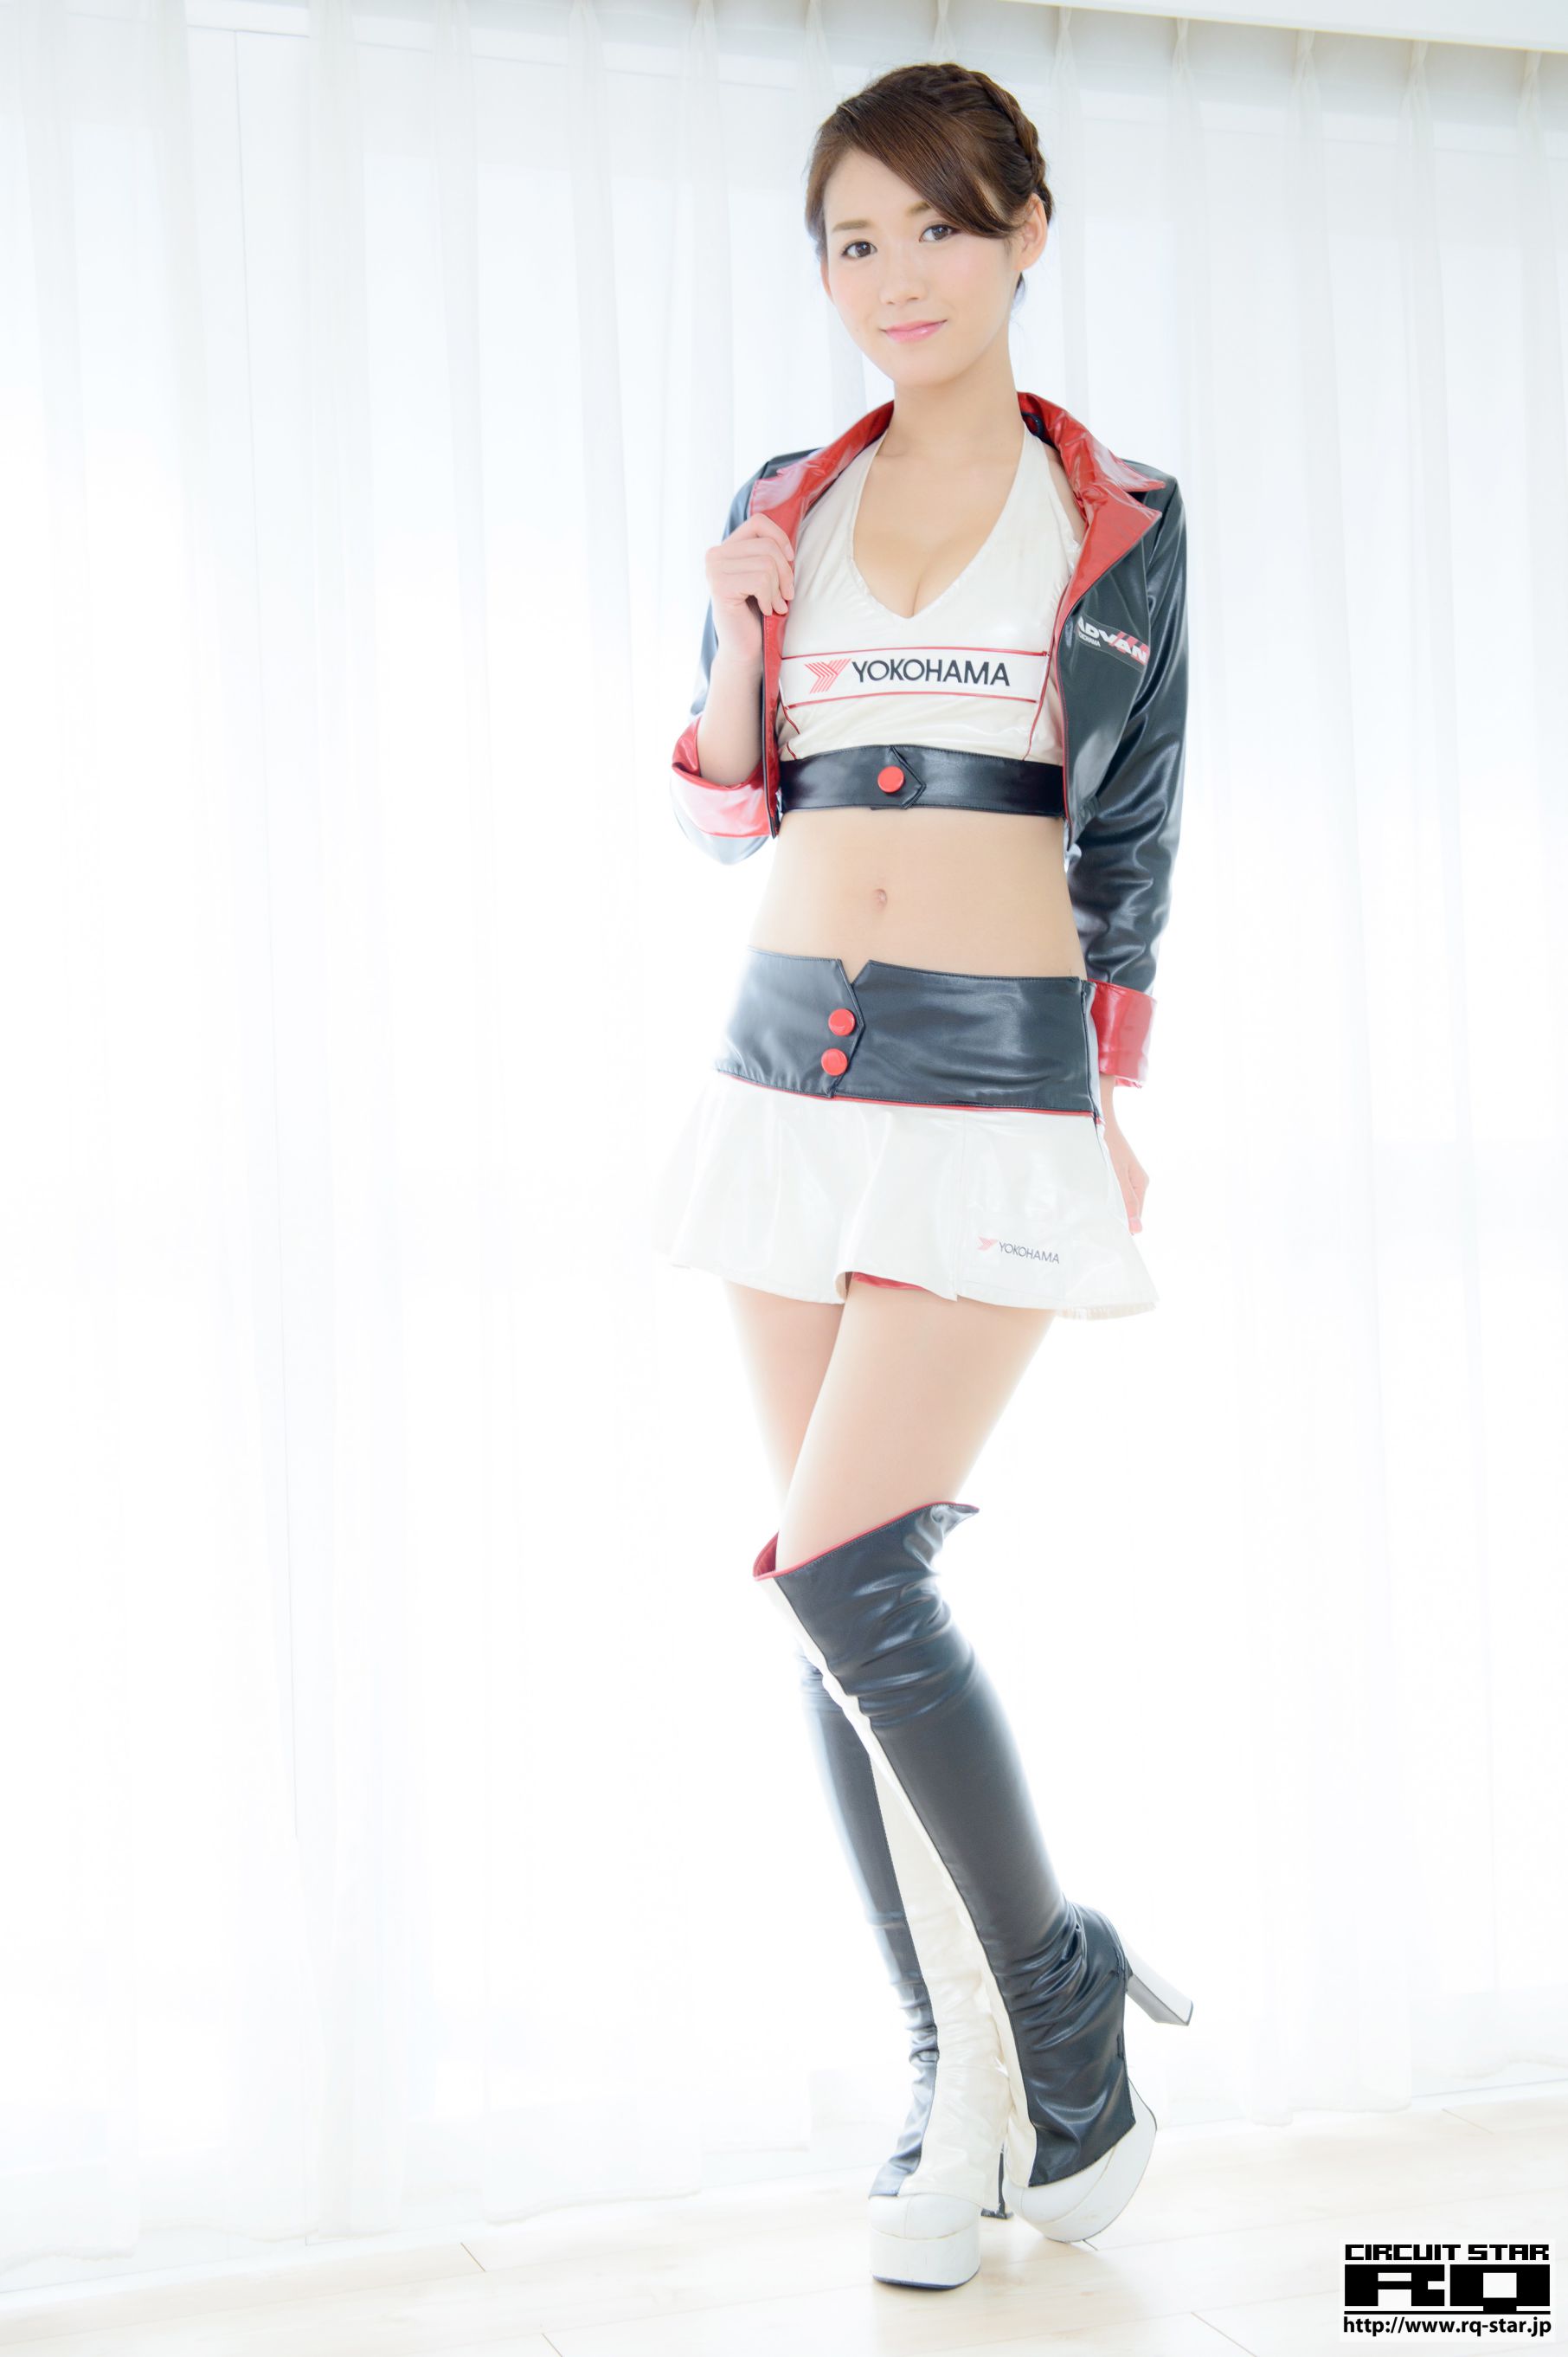 [RQ-STAR] NO.00968 Yumi 優実 Race Queen 赛车女郎 写真集